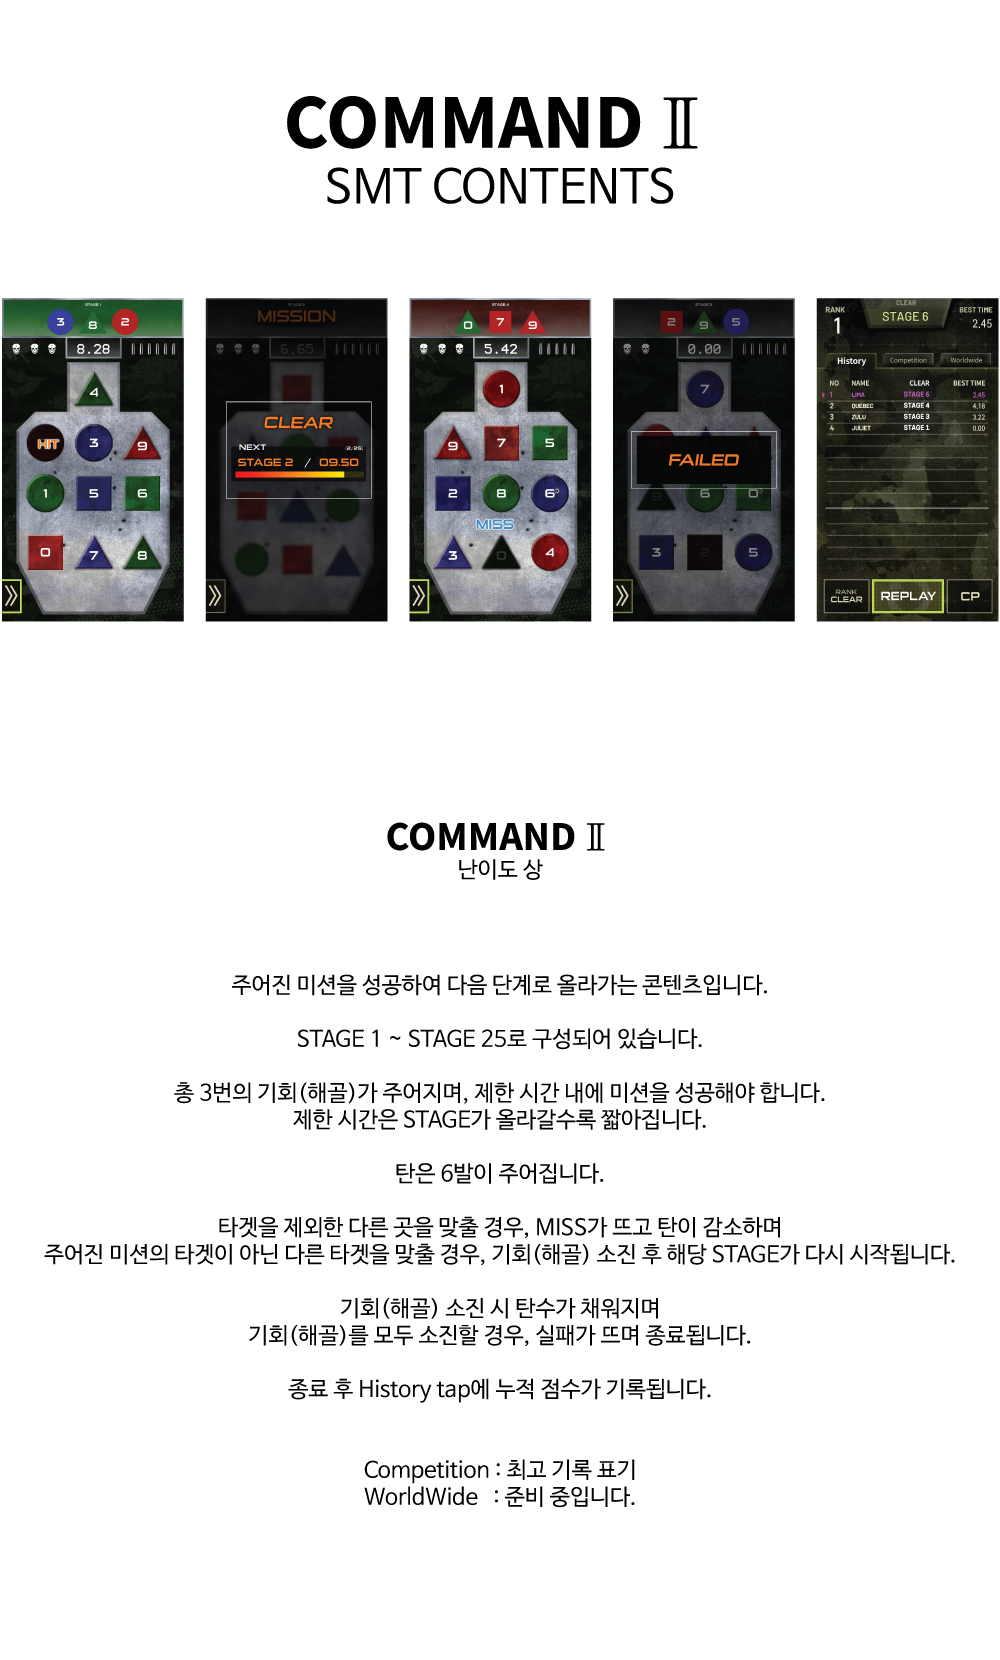 COMMAND II(Kor).jpg